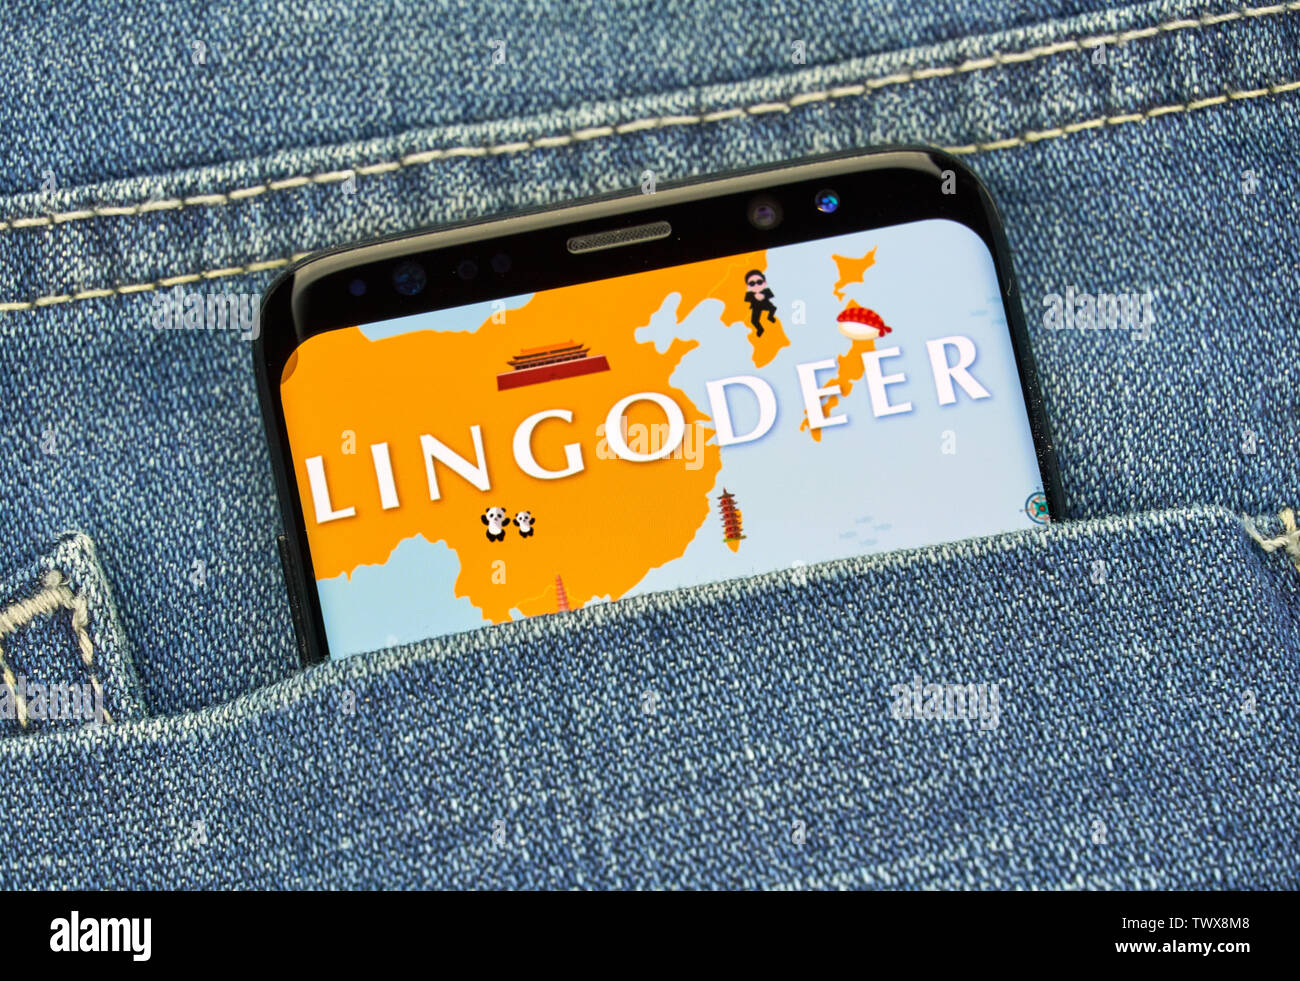 MONTREAL, Canadá - 23 de diciembre de 2018: Lingodeer android app en pantalla samsung s8. Lingodeer es una aplicación de aprendizaje de idioma y plataforma. Foto de stock